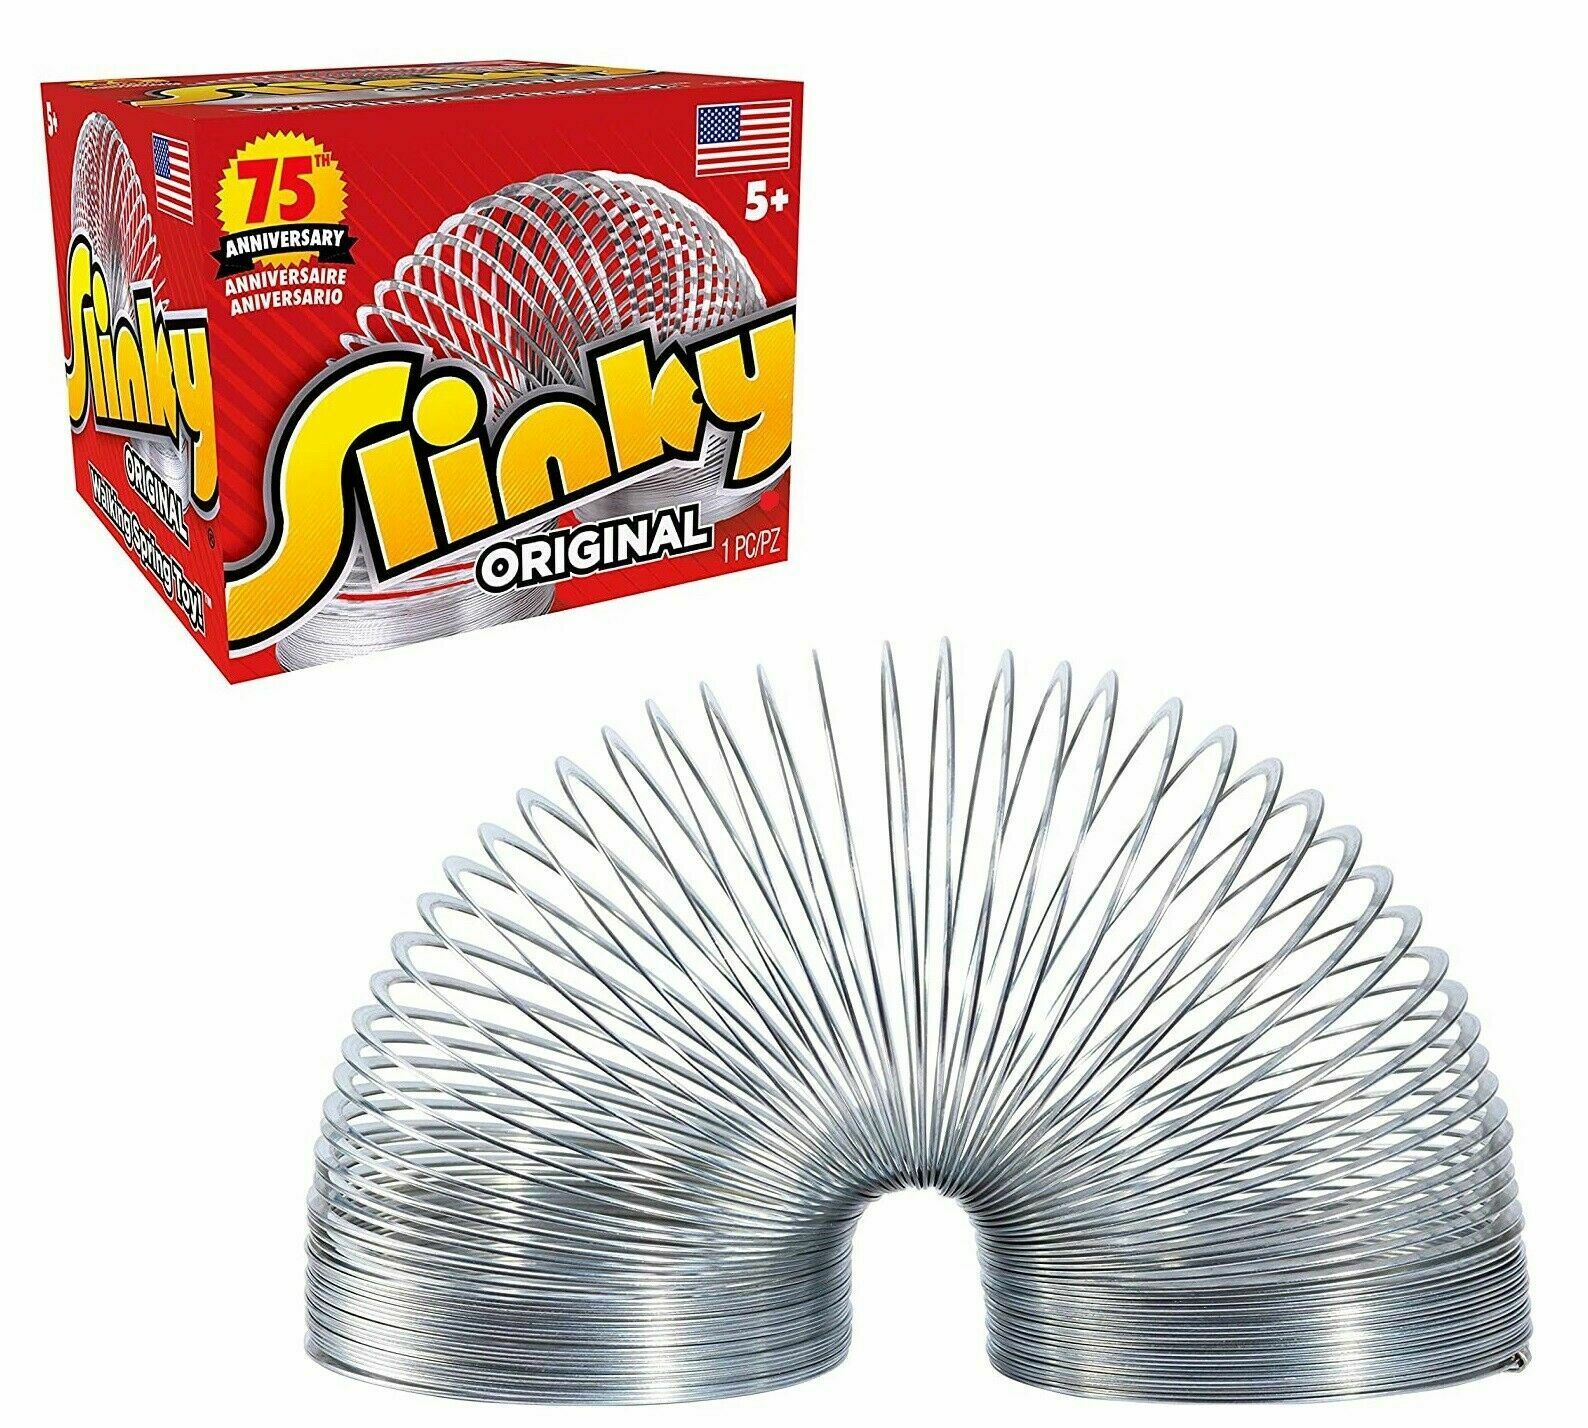 The Original Slinky Brand Slinky Kids Spring Toy